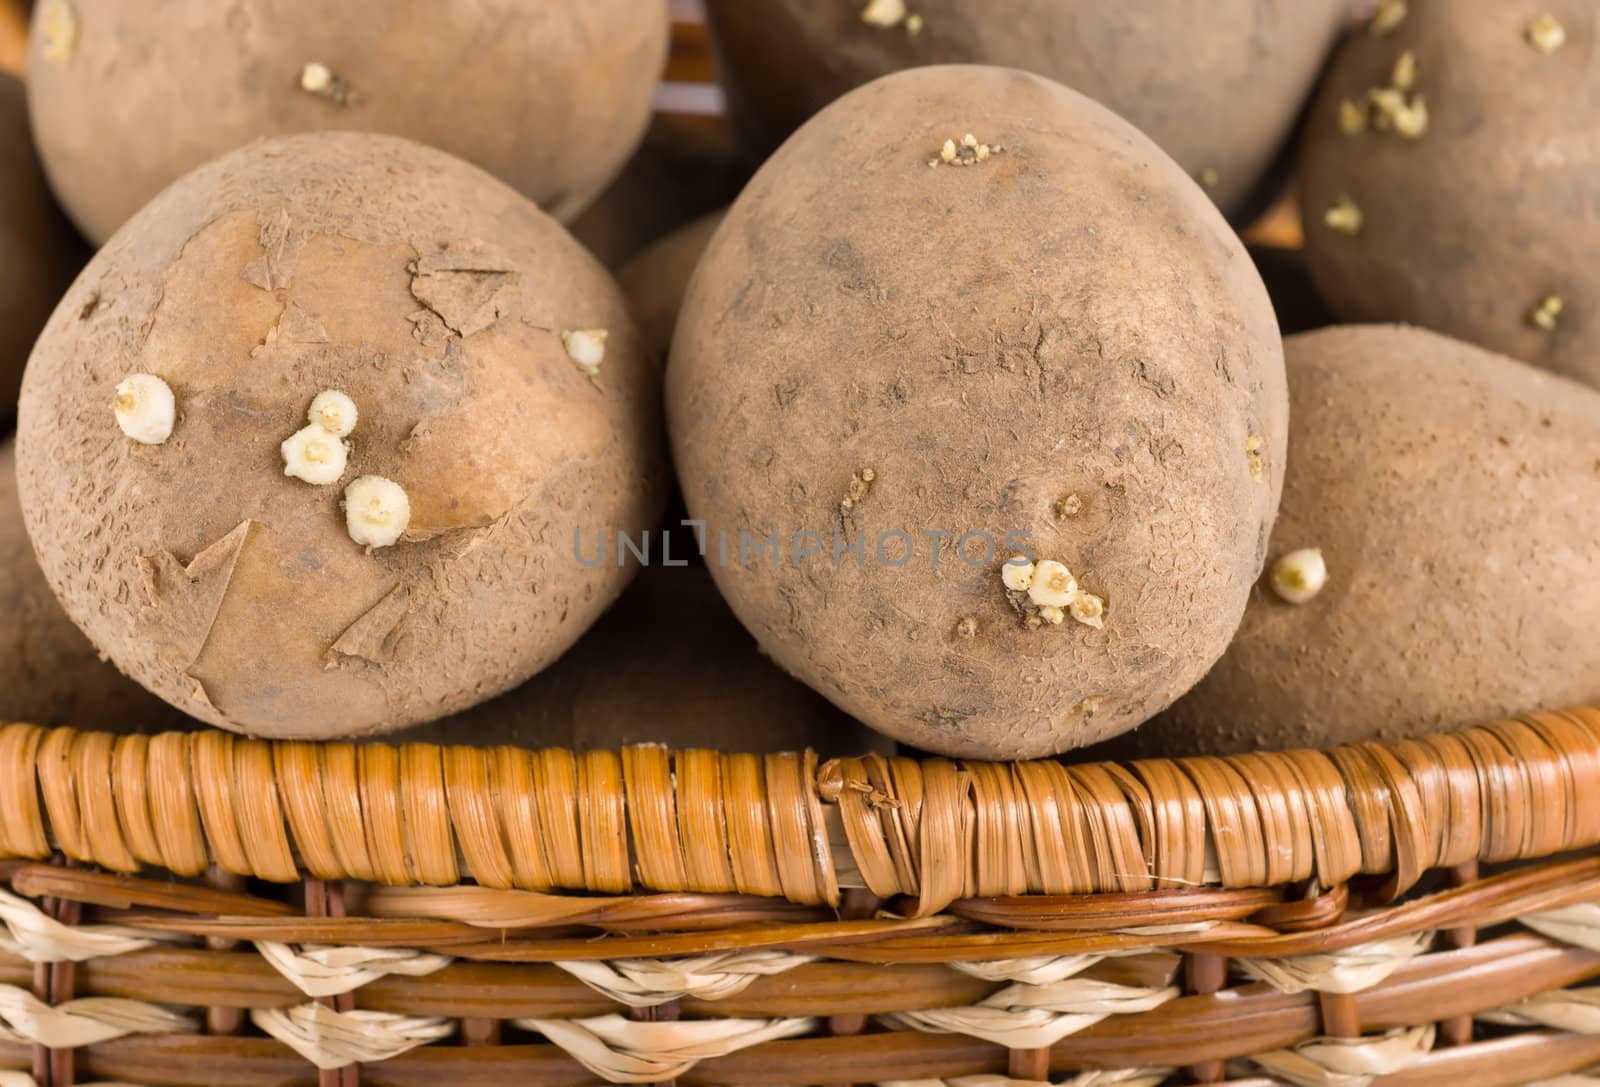 Raw potato in a wicker wooden basket 